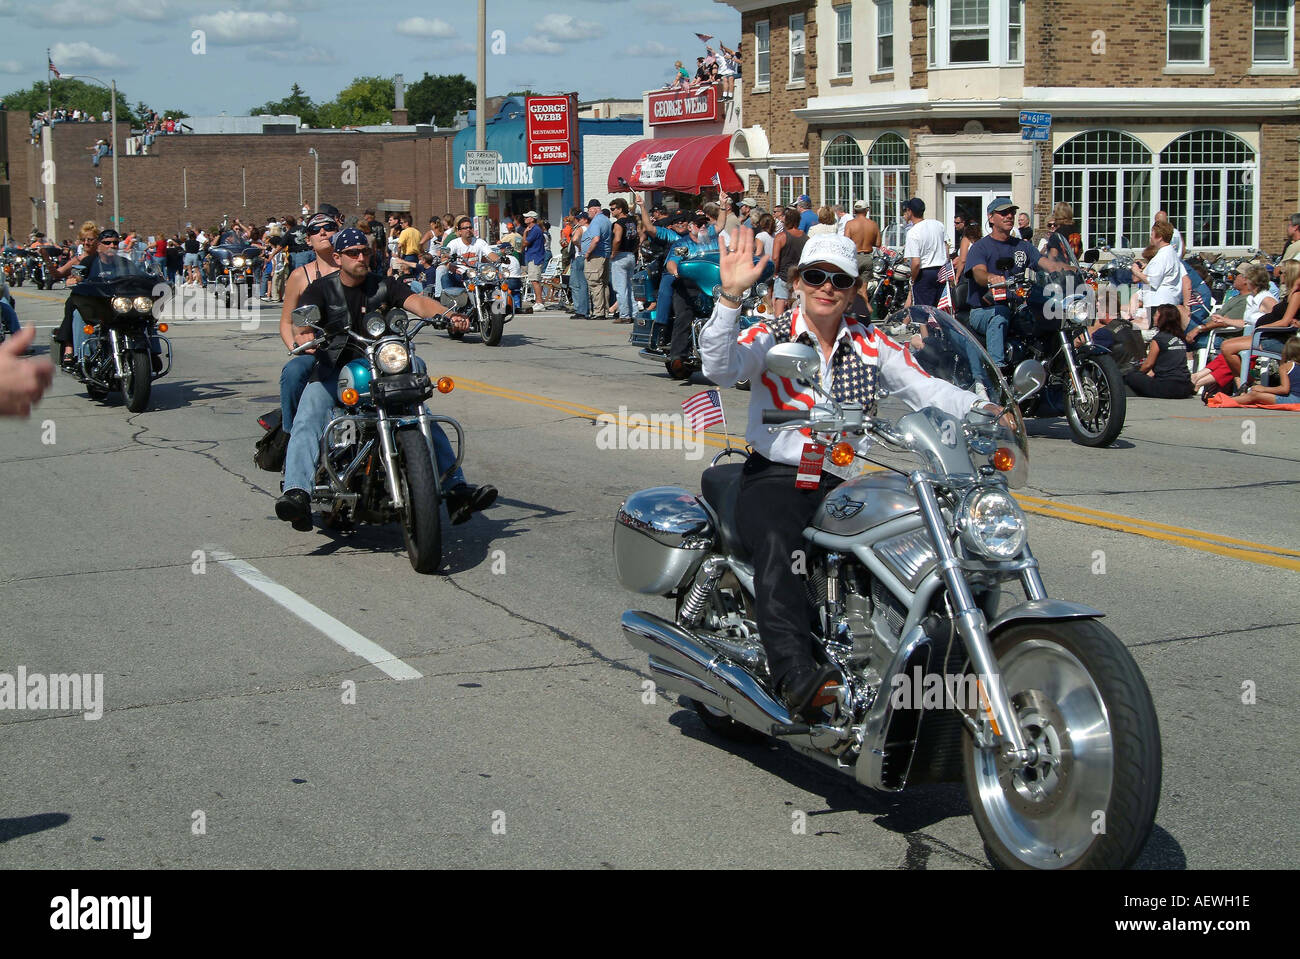 Eine Harley Fahrer Frau gekleidet mit amerikanische Flagge Kleidung Reiten  ihre V-Rod Harley Davidson Motorrad in der Parade Stockfotografie - Alamy